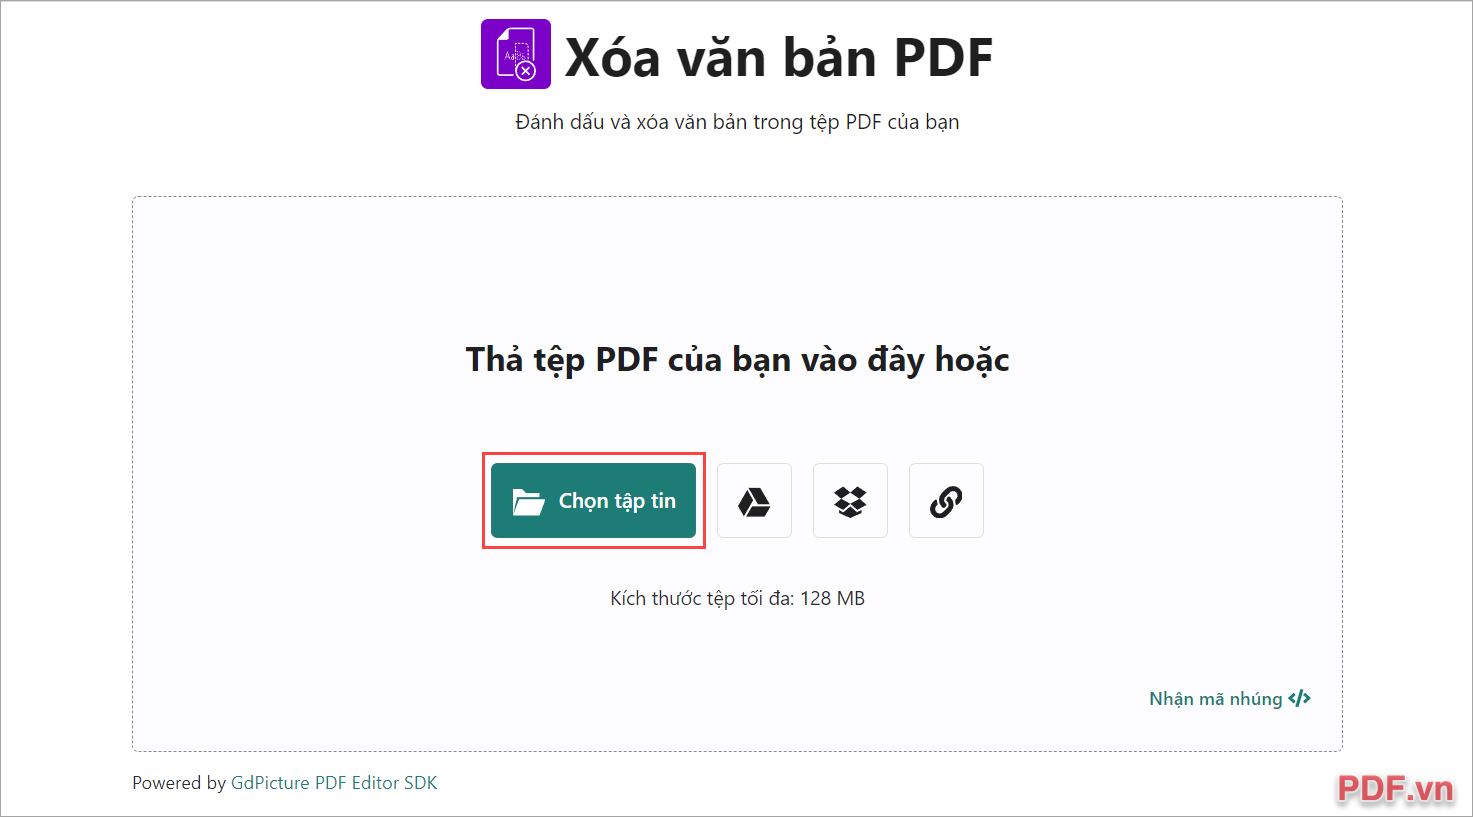 Truy cập trang chủ AVEpdf và nhấn vào Chọn tập tin để mở file PDF cần xóa chữ